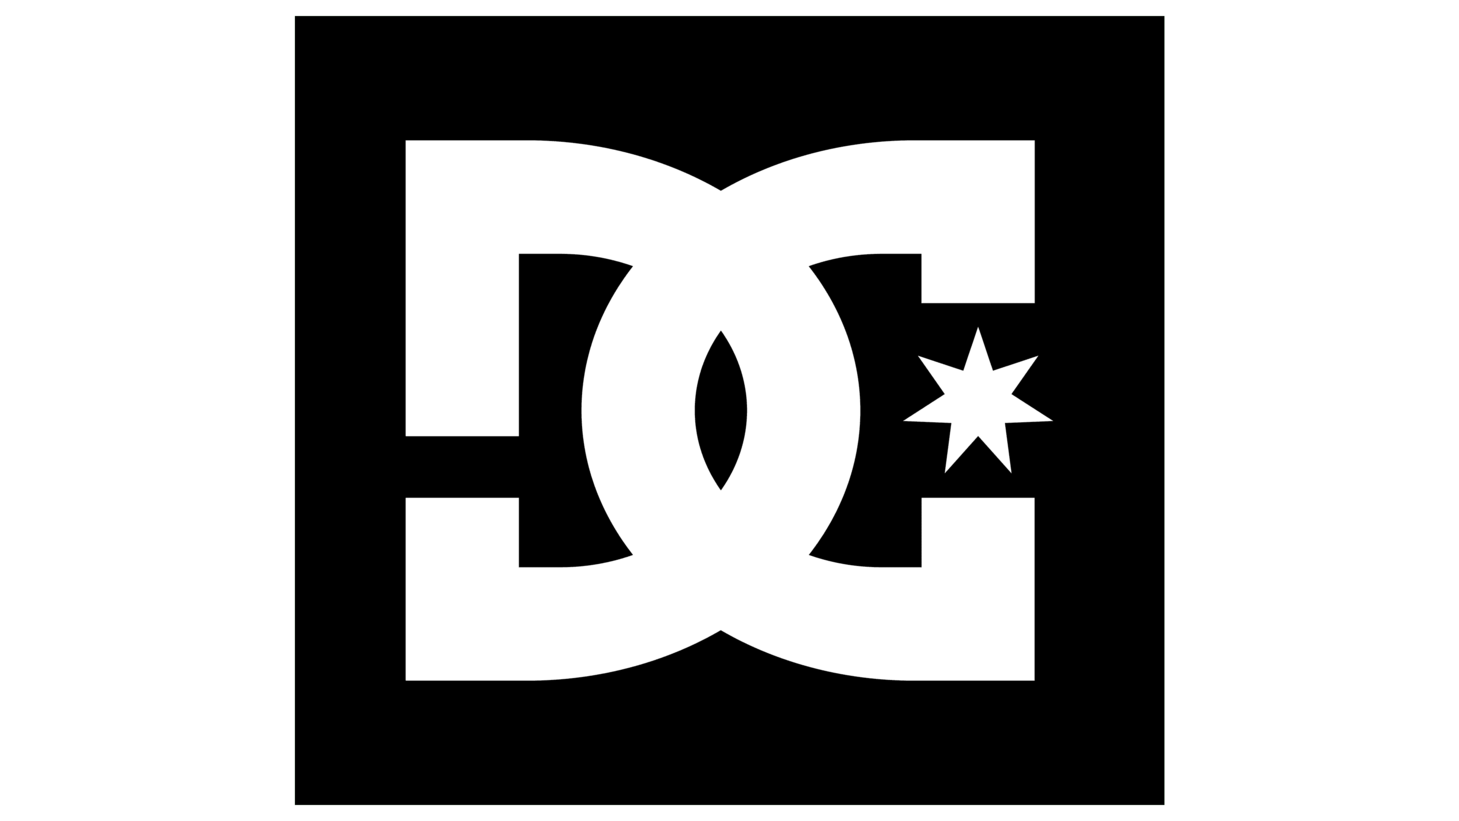 Dc shoes symbol